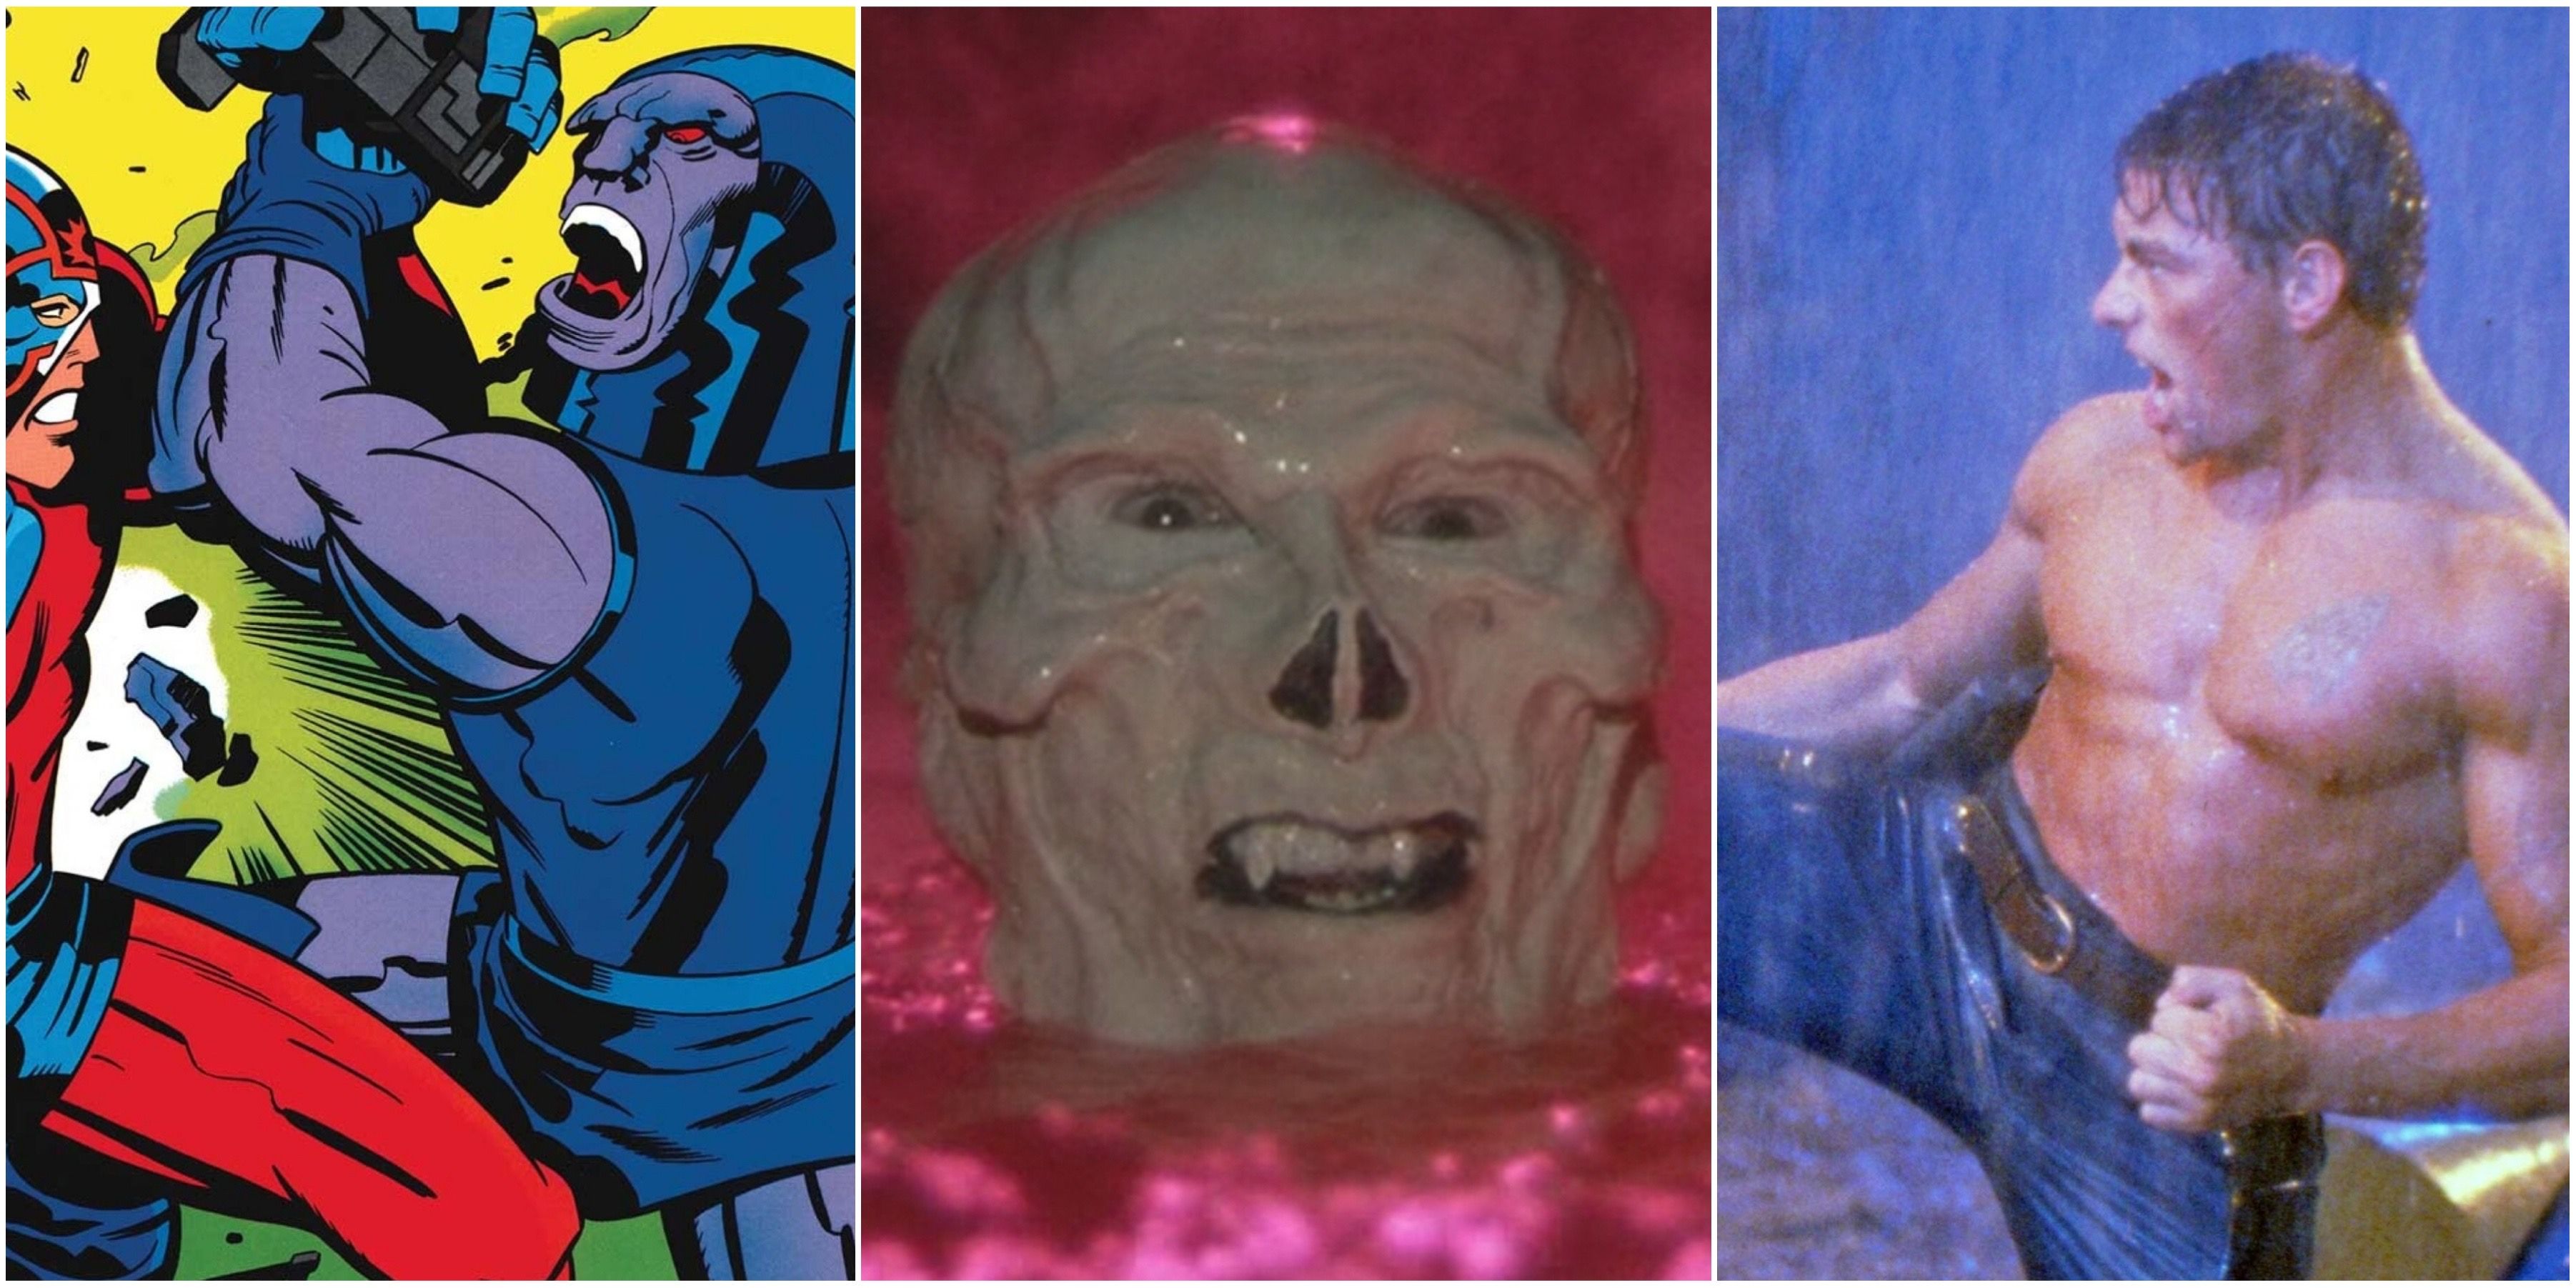 Darksied, Skeletor, JCVD header image for Masters of the universe